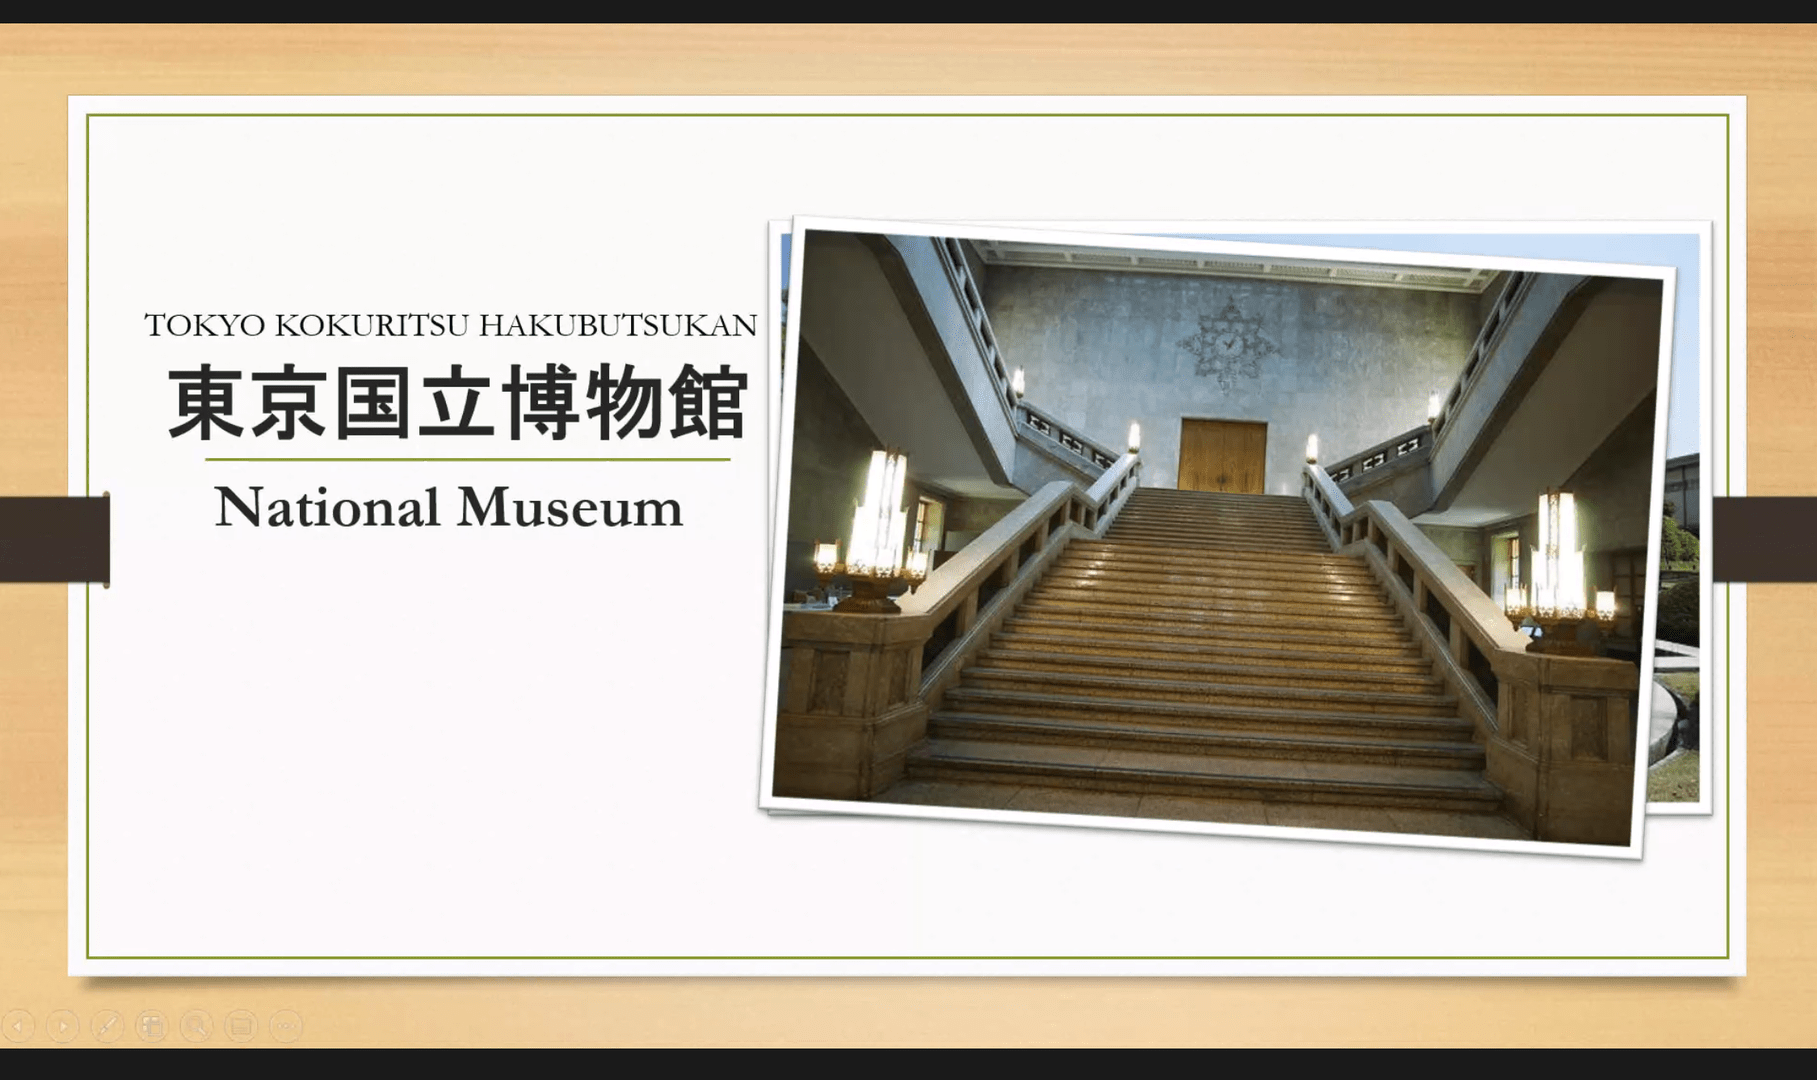 ドラマ『半沢直樹』のロケ地・東京国立博物館